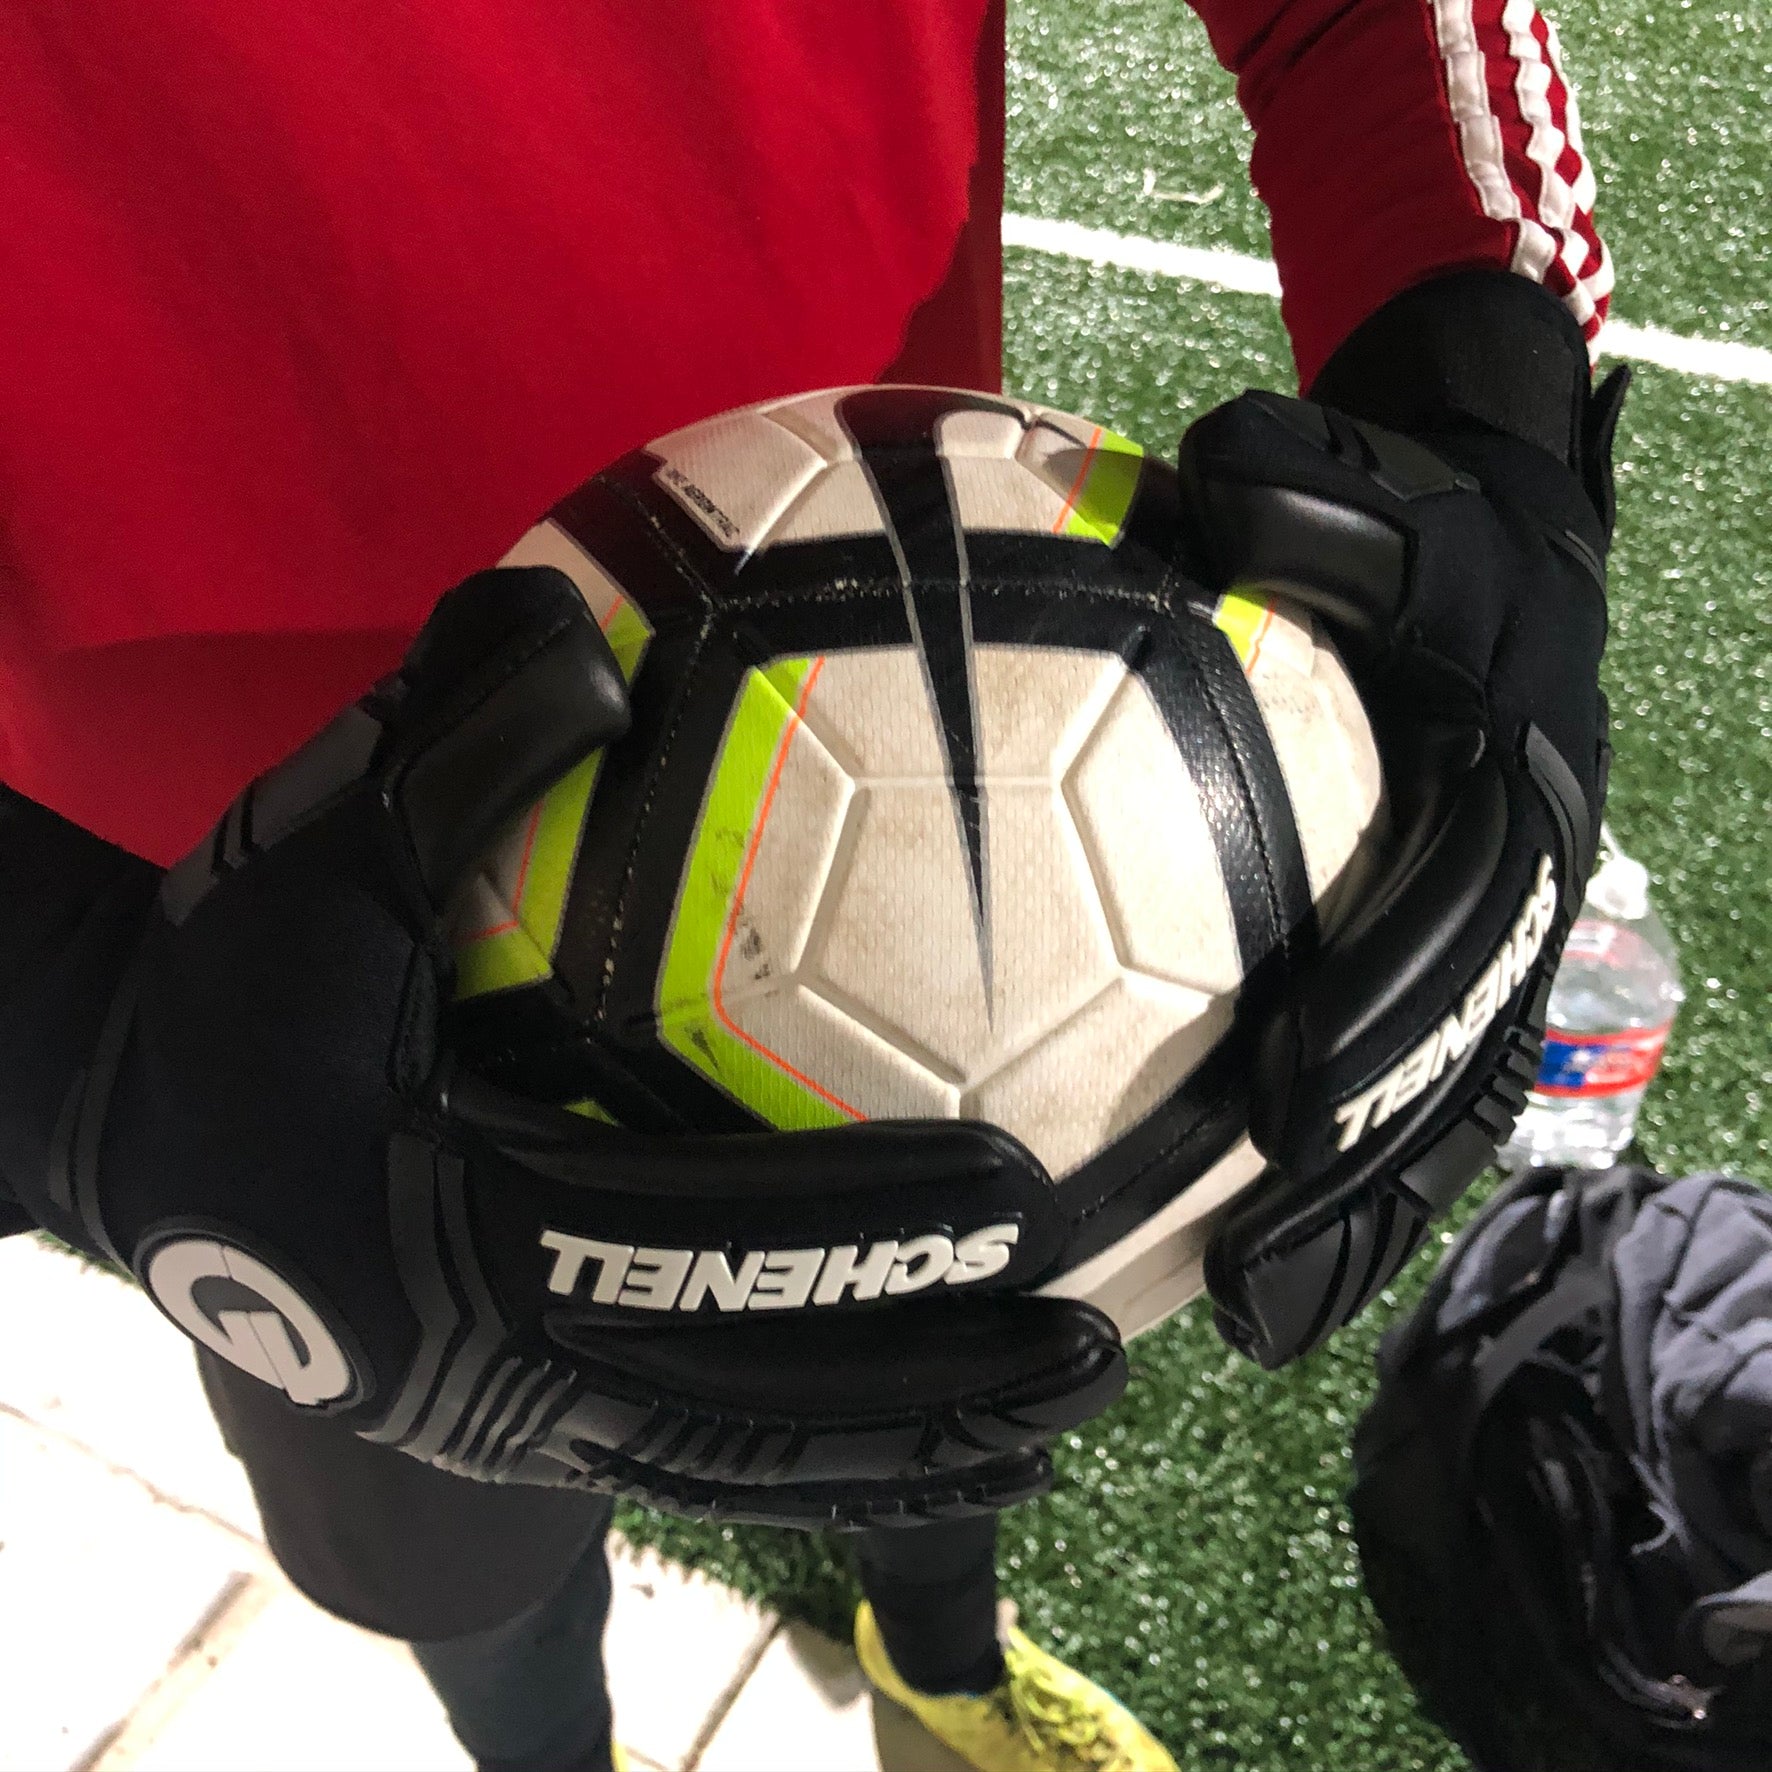 soccer goalie gloves holding a ball